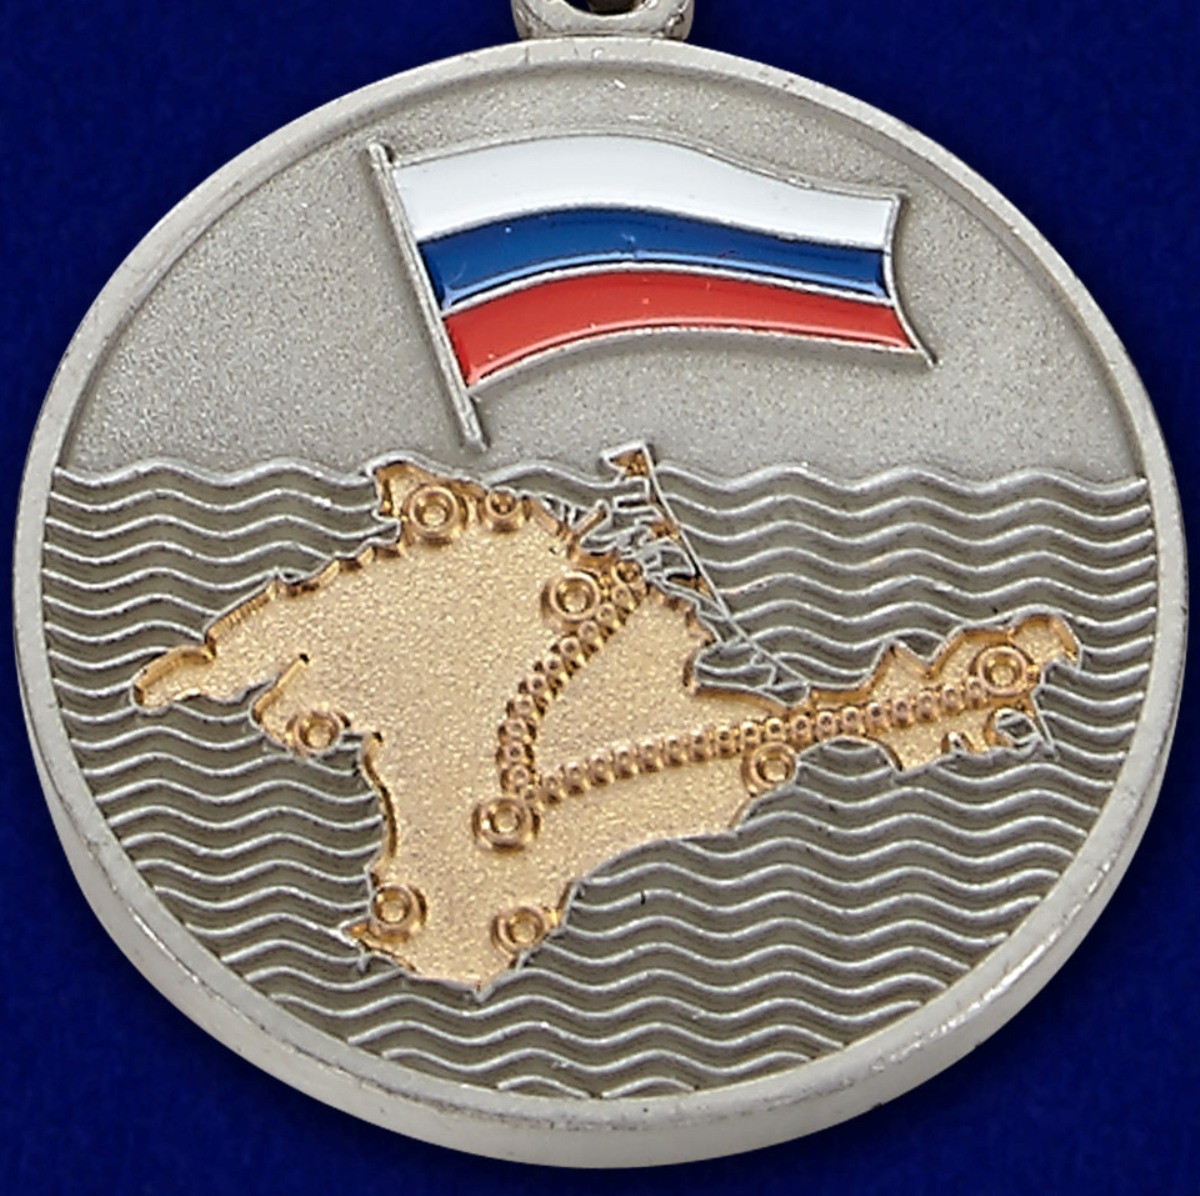 Медаль "За Крымский поход" казаков России 